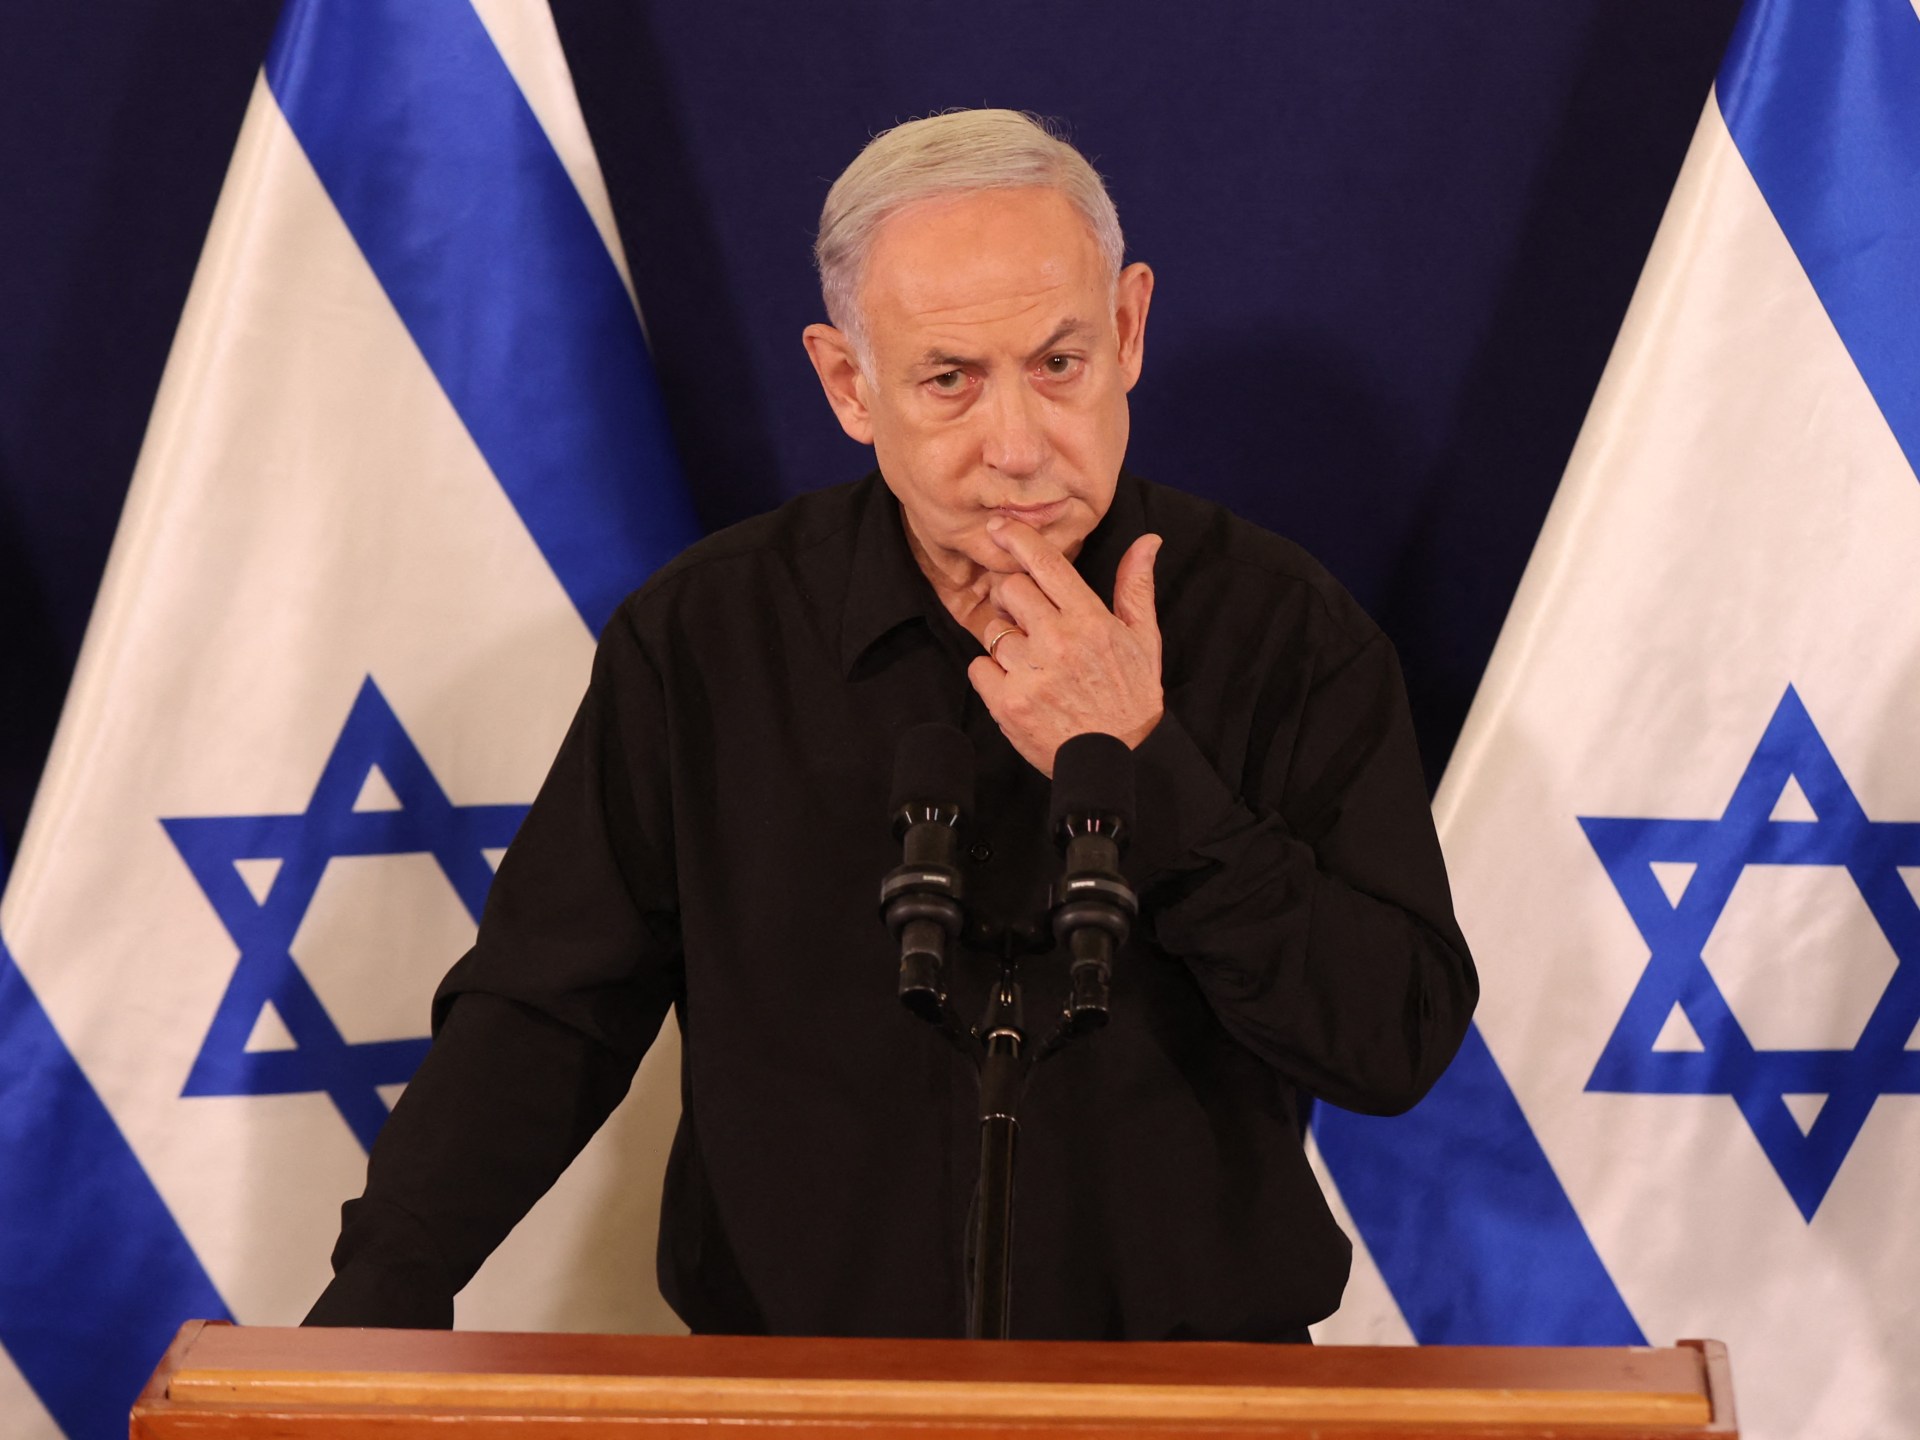 استطلاع: ثلثا الإسرائيليين لا يصدقون ادعاء نتنياهو بشأن غزة | أخبار – البوكس نيوز